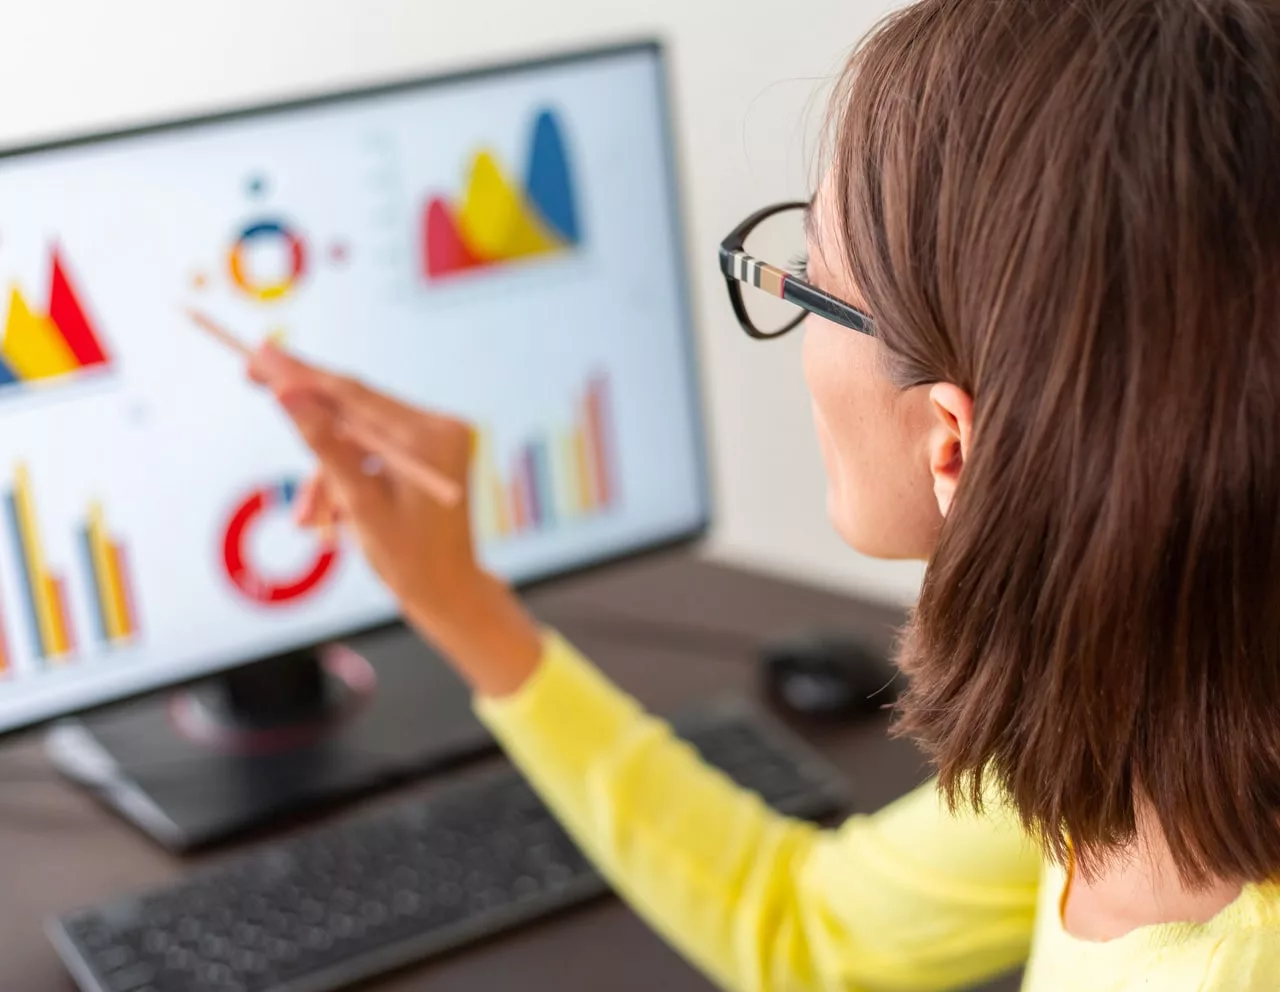 Femme analysant des graphiques sur écran d'ordinateur.